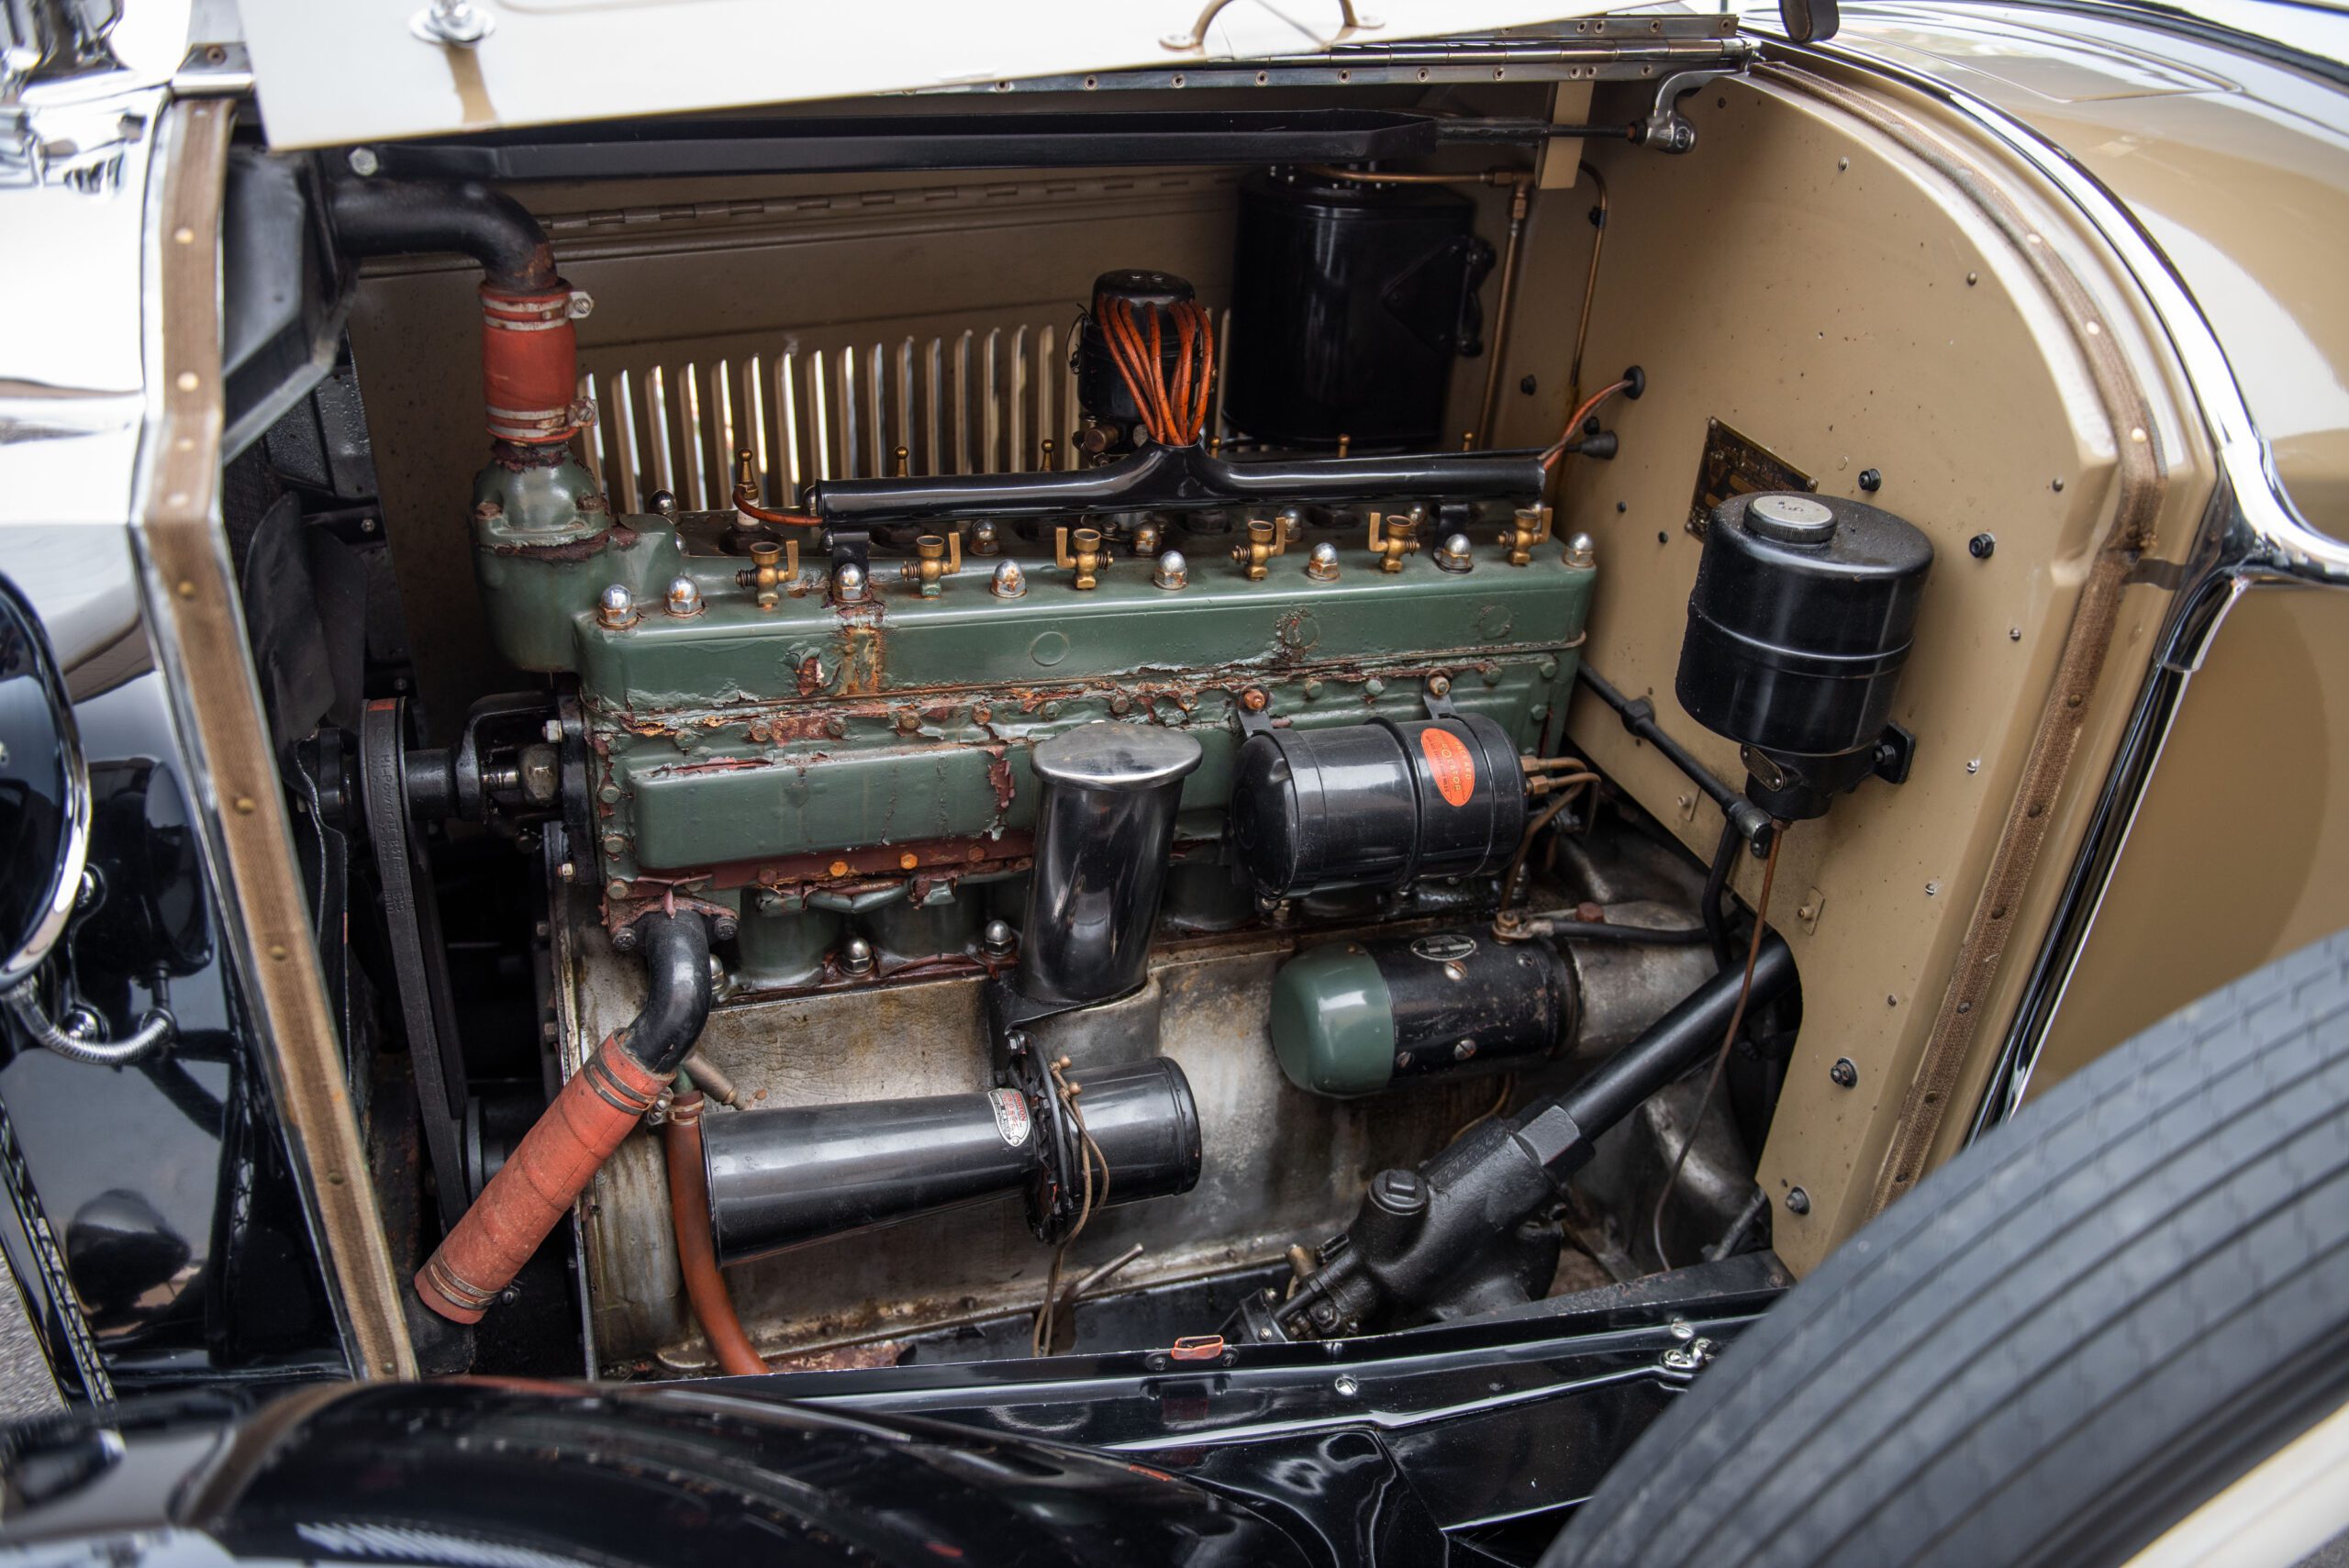 1928 Packard Six Runabout, Packard, Packard Six